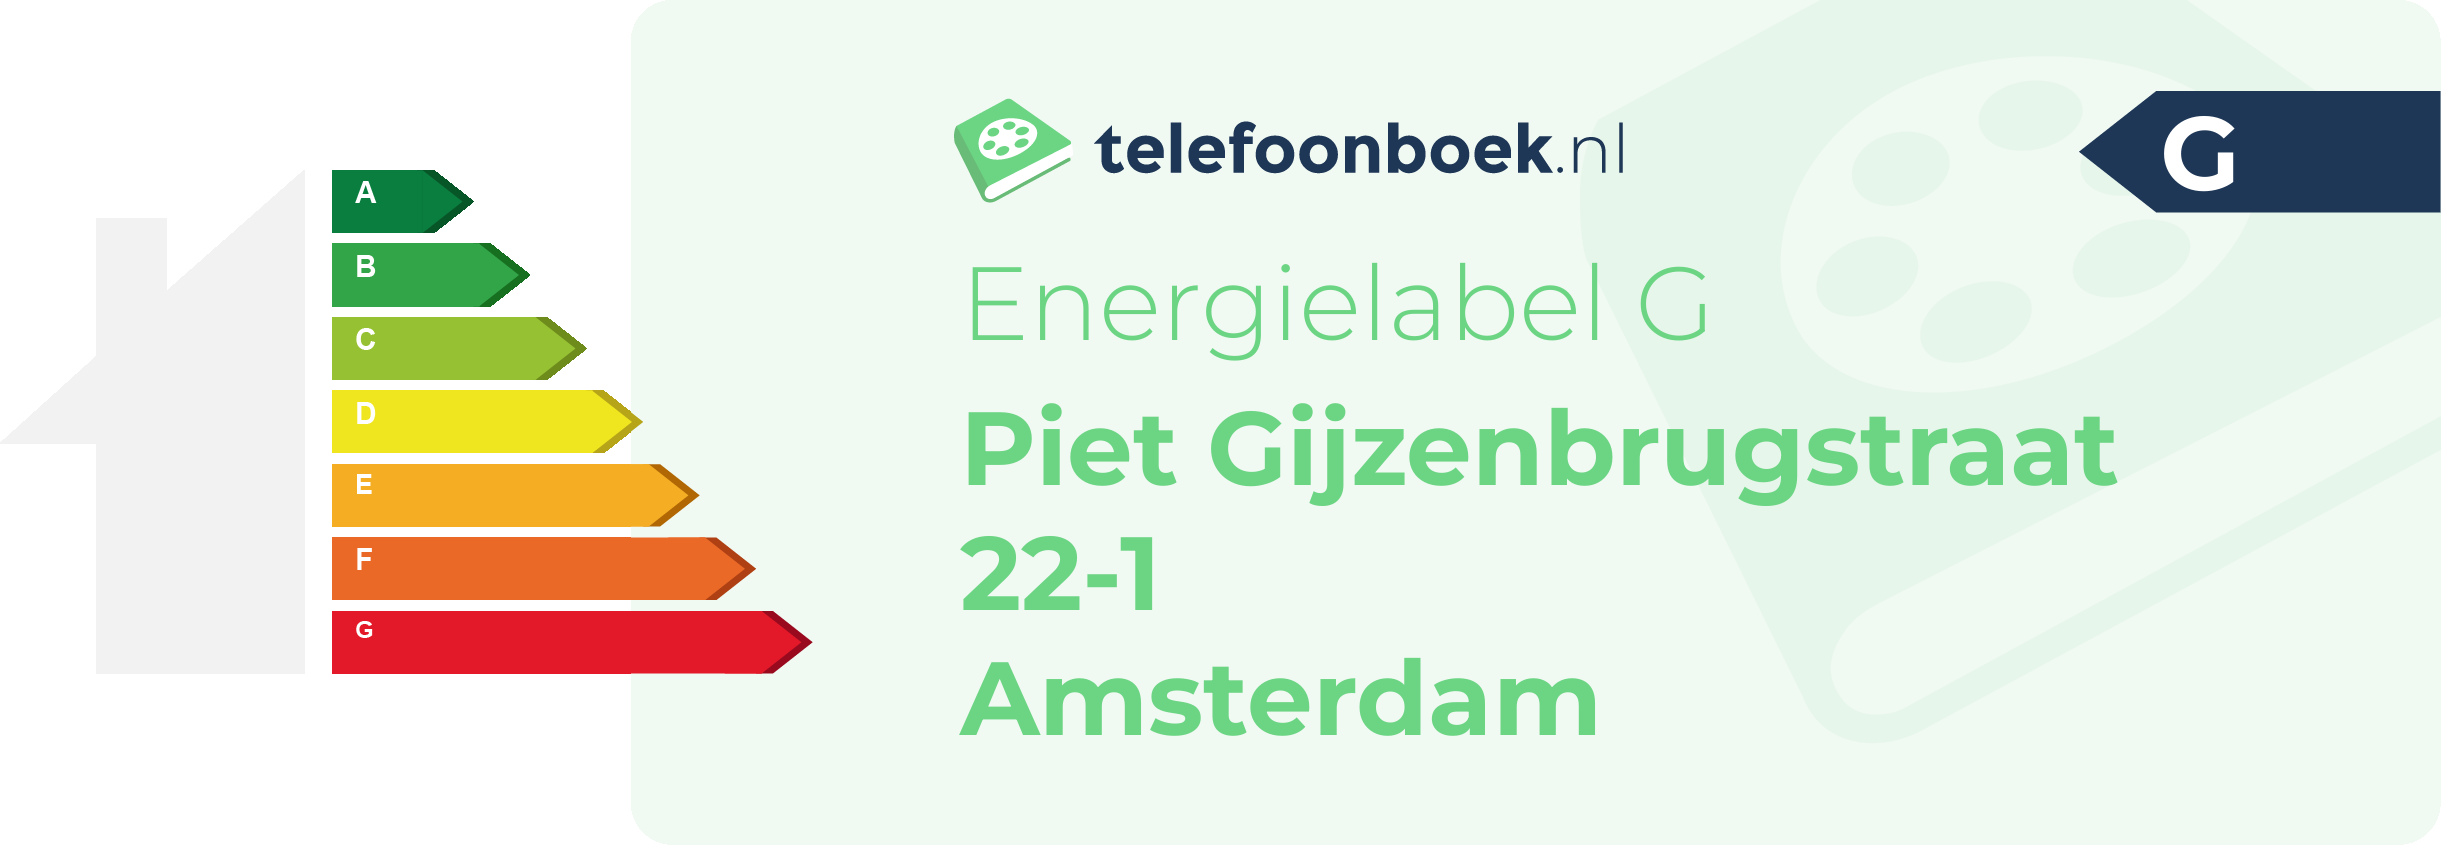 Energielabel Piet Gijzenbrugstraat 22-1 Amsterdam